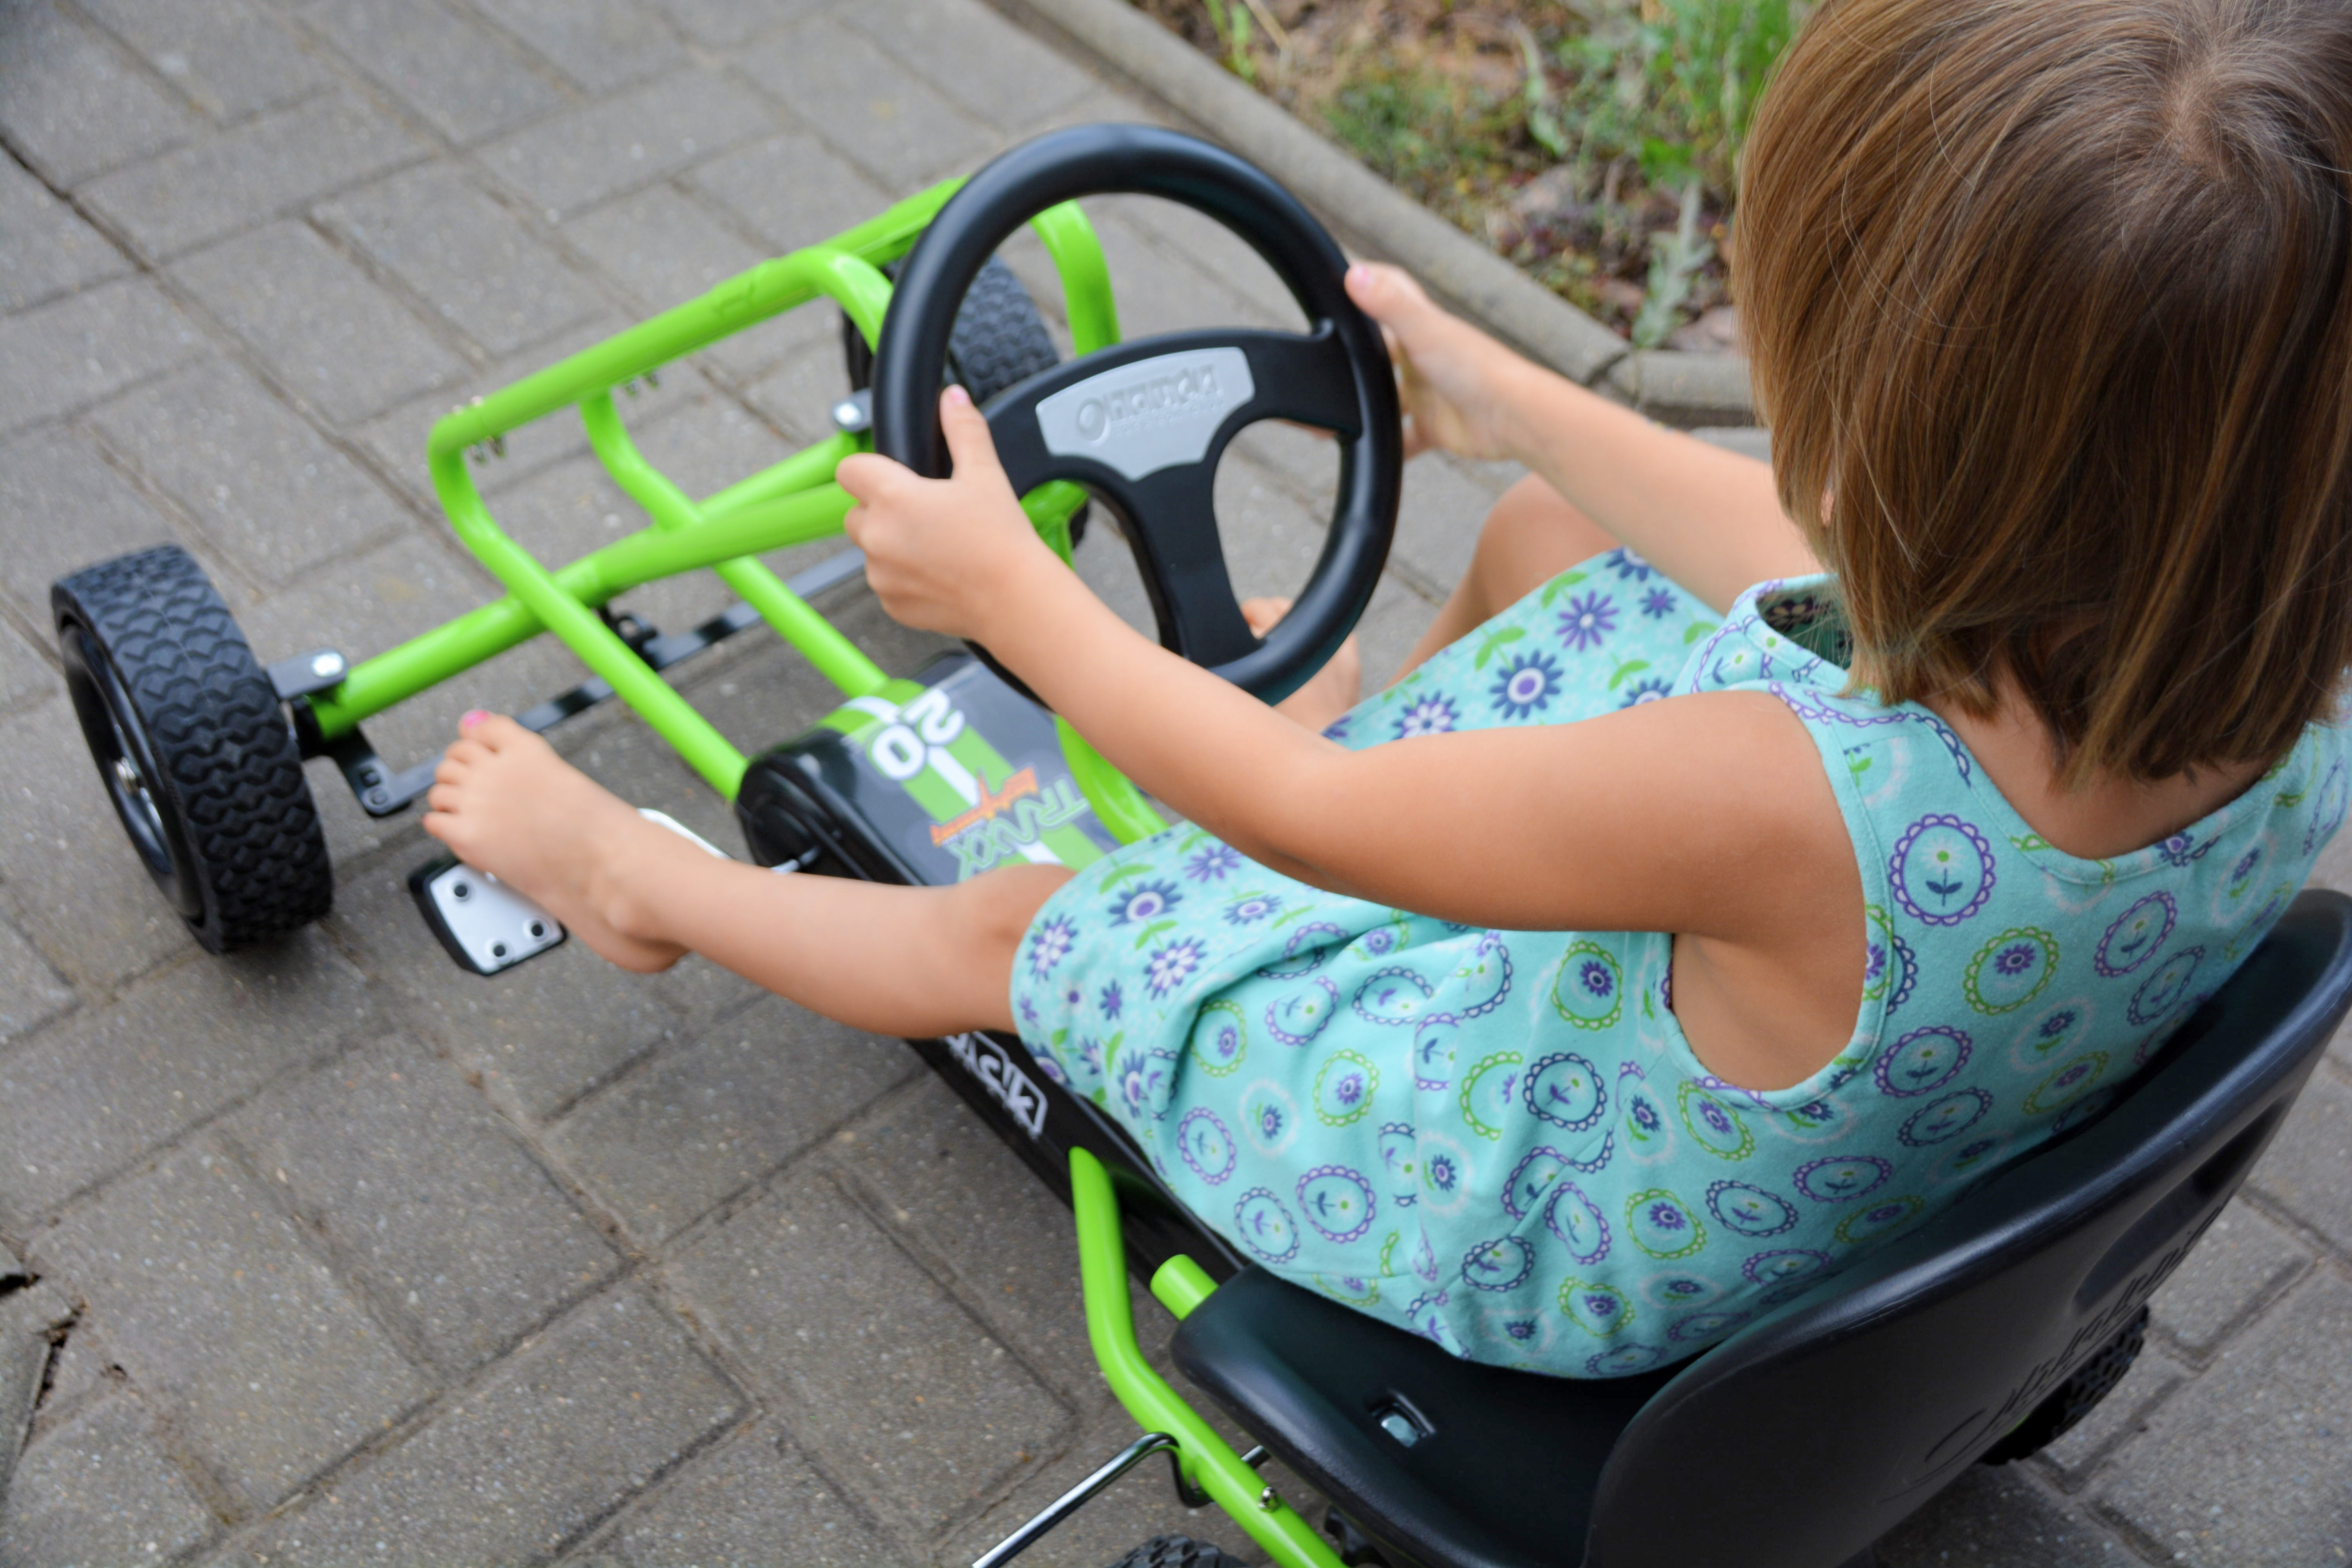 Produkttest: Hauck Toys Go-Kart Lightning green – familös-DieTestfamilie